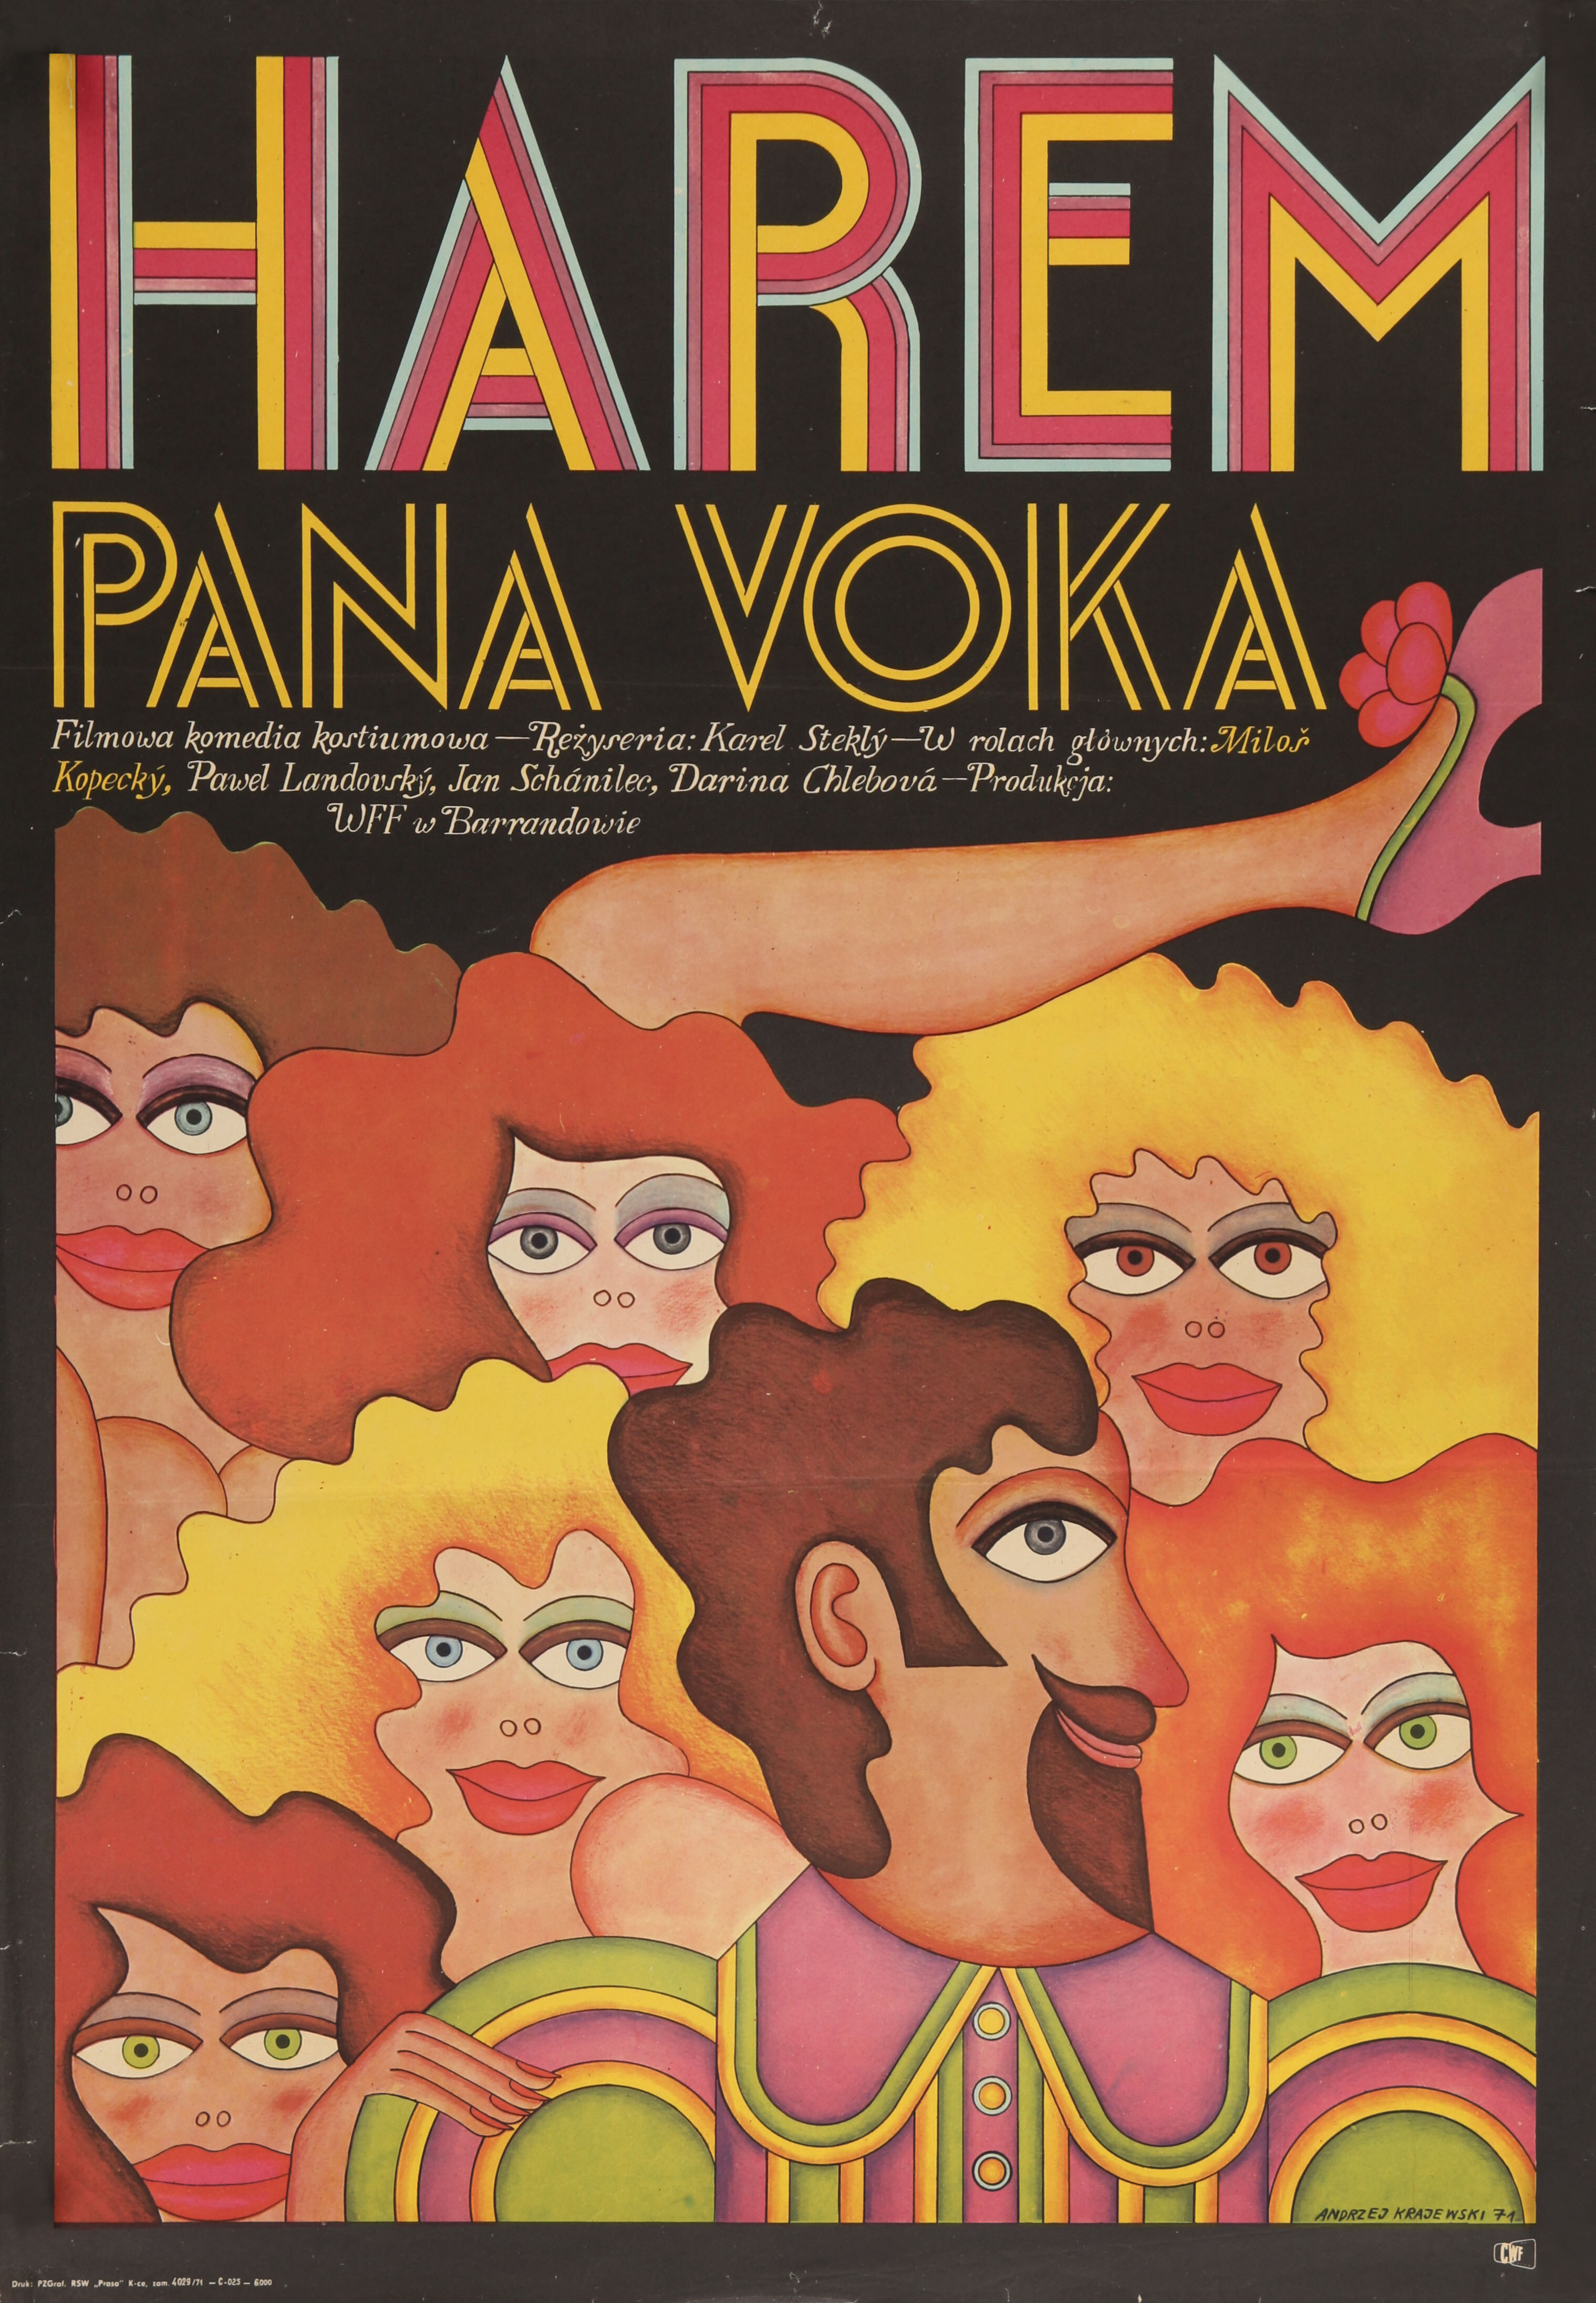 Свадьбы пана Вока (Svatby pana Voka, 1971), режиссёр Карел Стекли, польский постер к фильму, автор Анджей Краевский (графический дизайн, 1971 год)